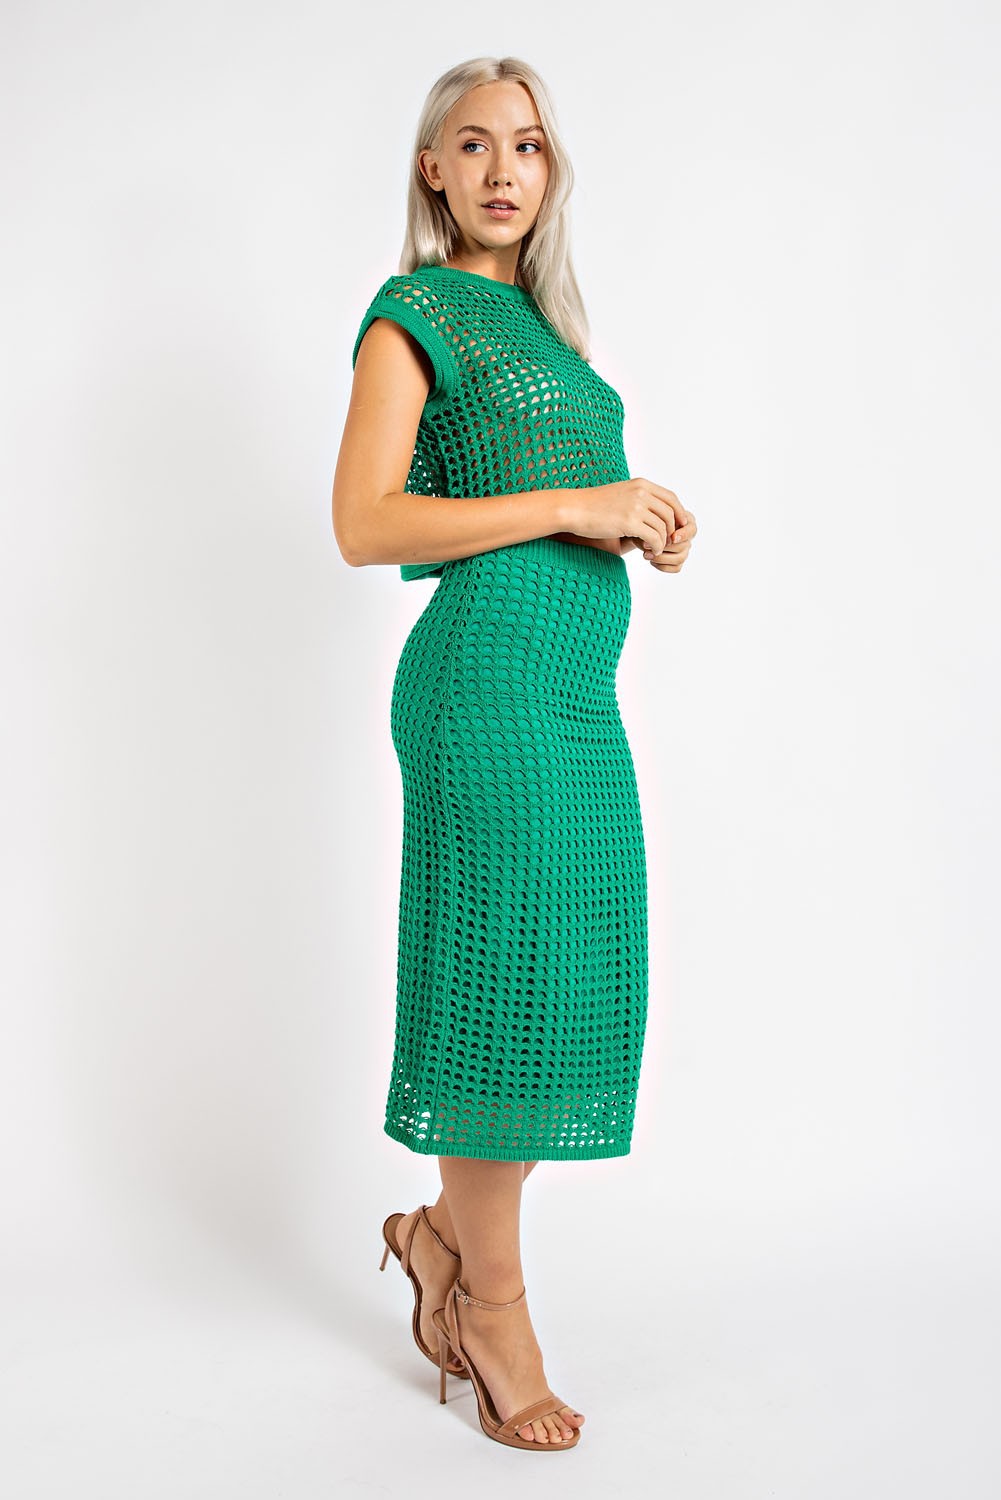 Woven Way Crochet Set Skirt and Crop Top in Emerald